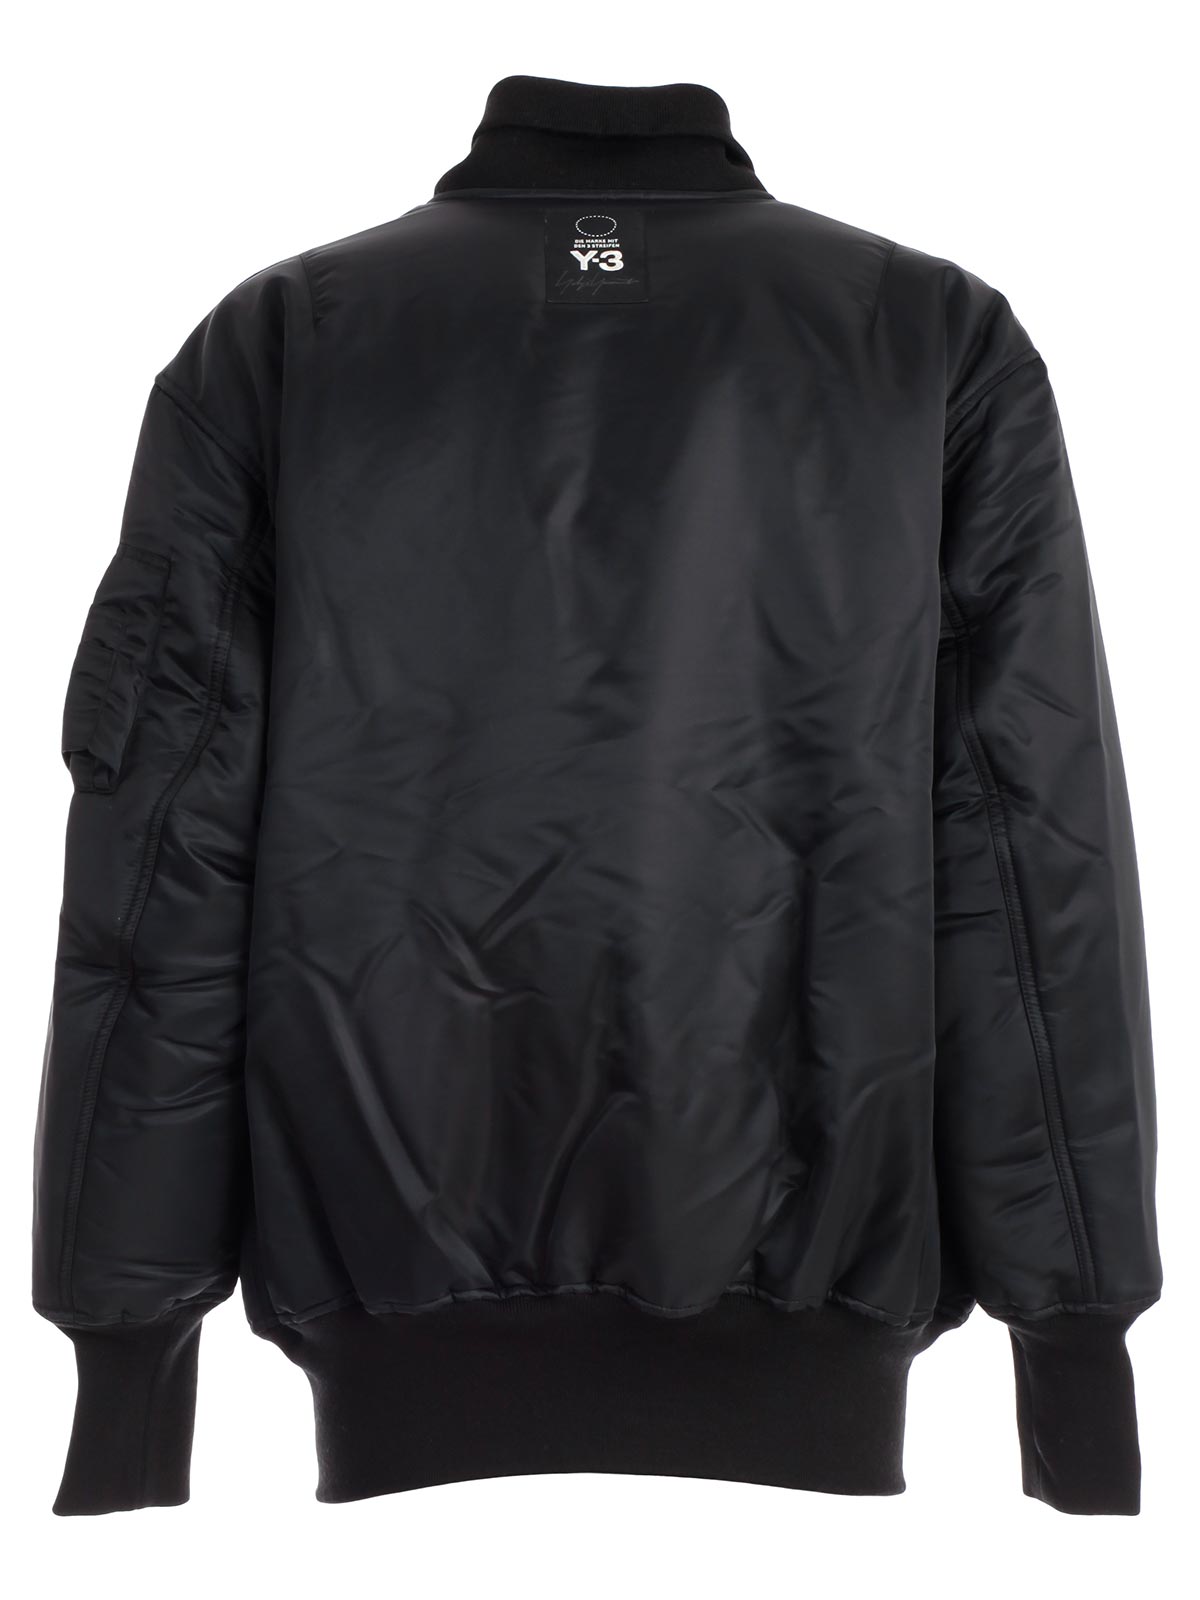 Y-3 Yohji Yamamoto Adidas Jacket DP0518 